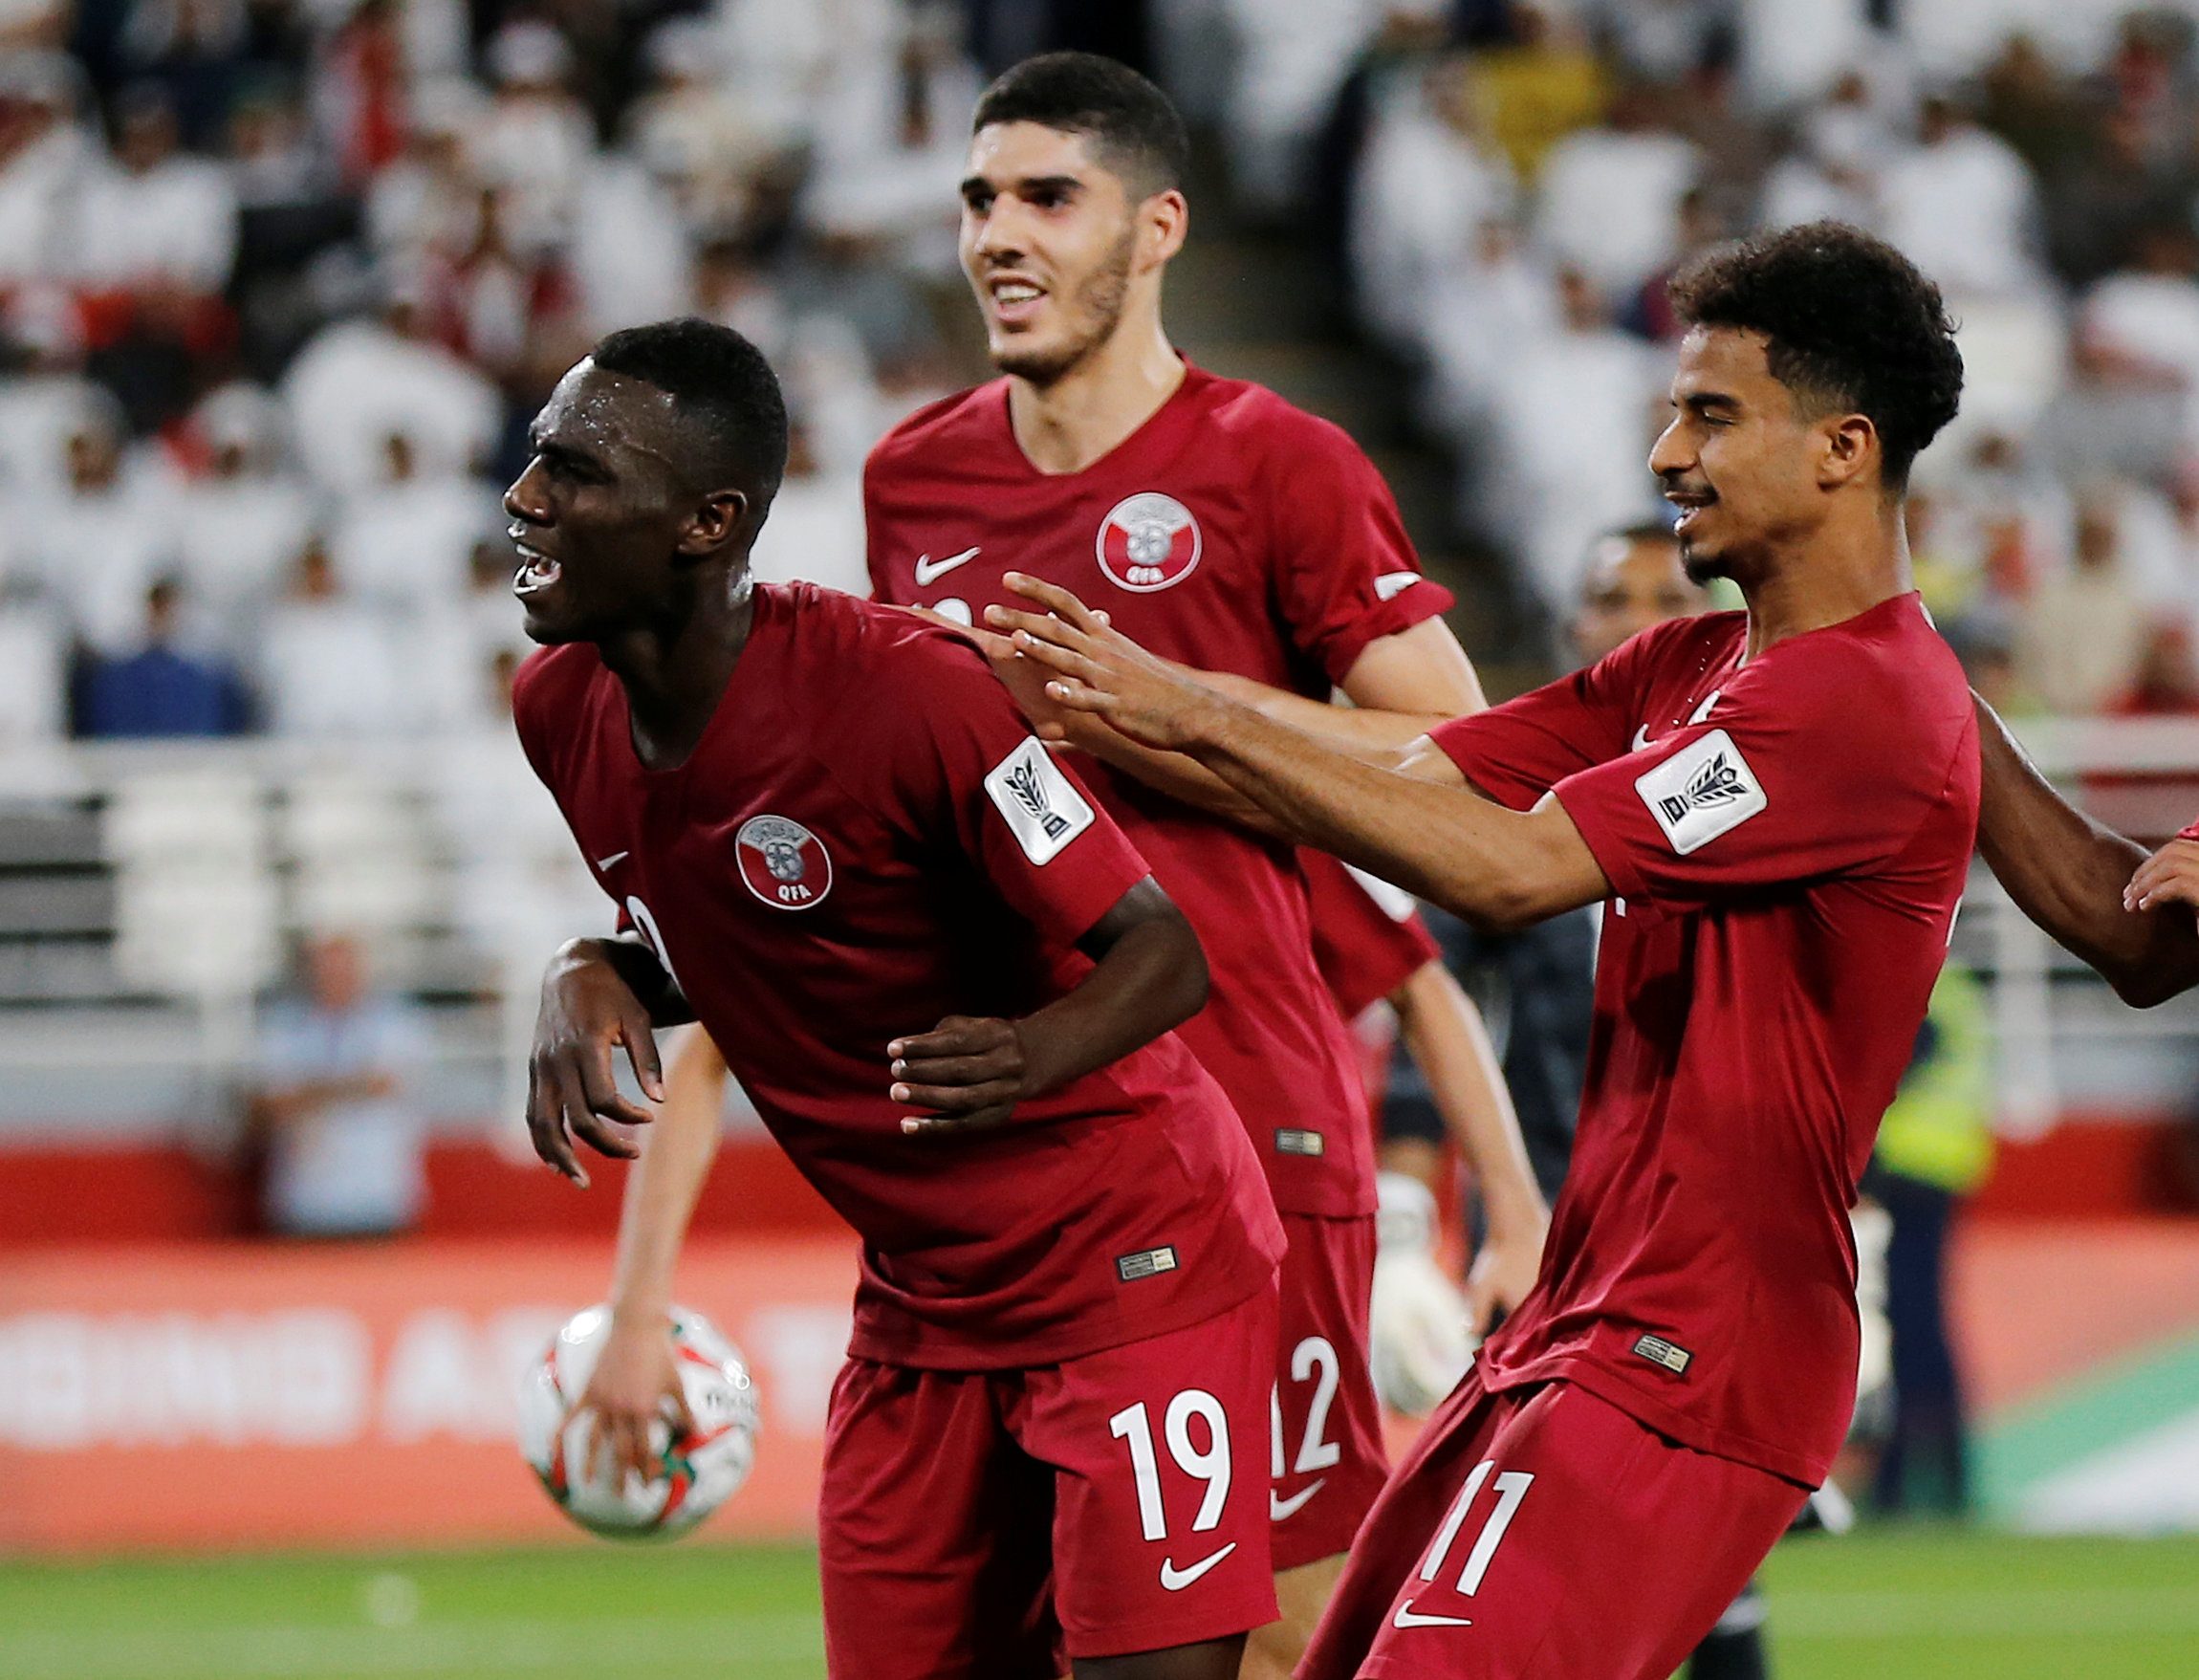 المهاجم القطري المعز علي رفع رصيده في كأس آسيا 2019 إلى 8 أهداف (رويترز)